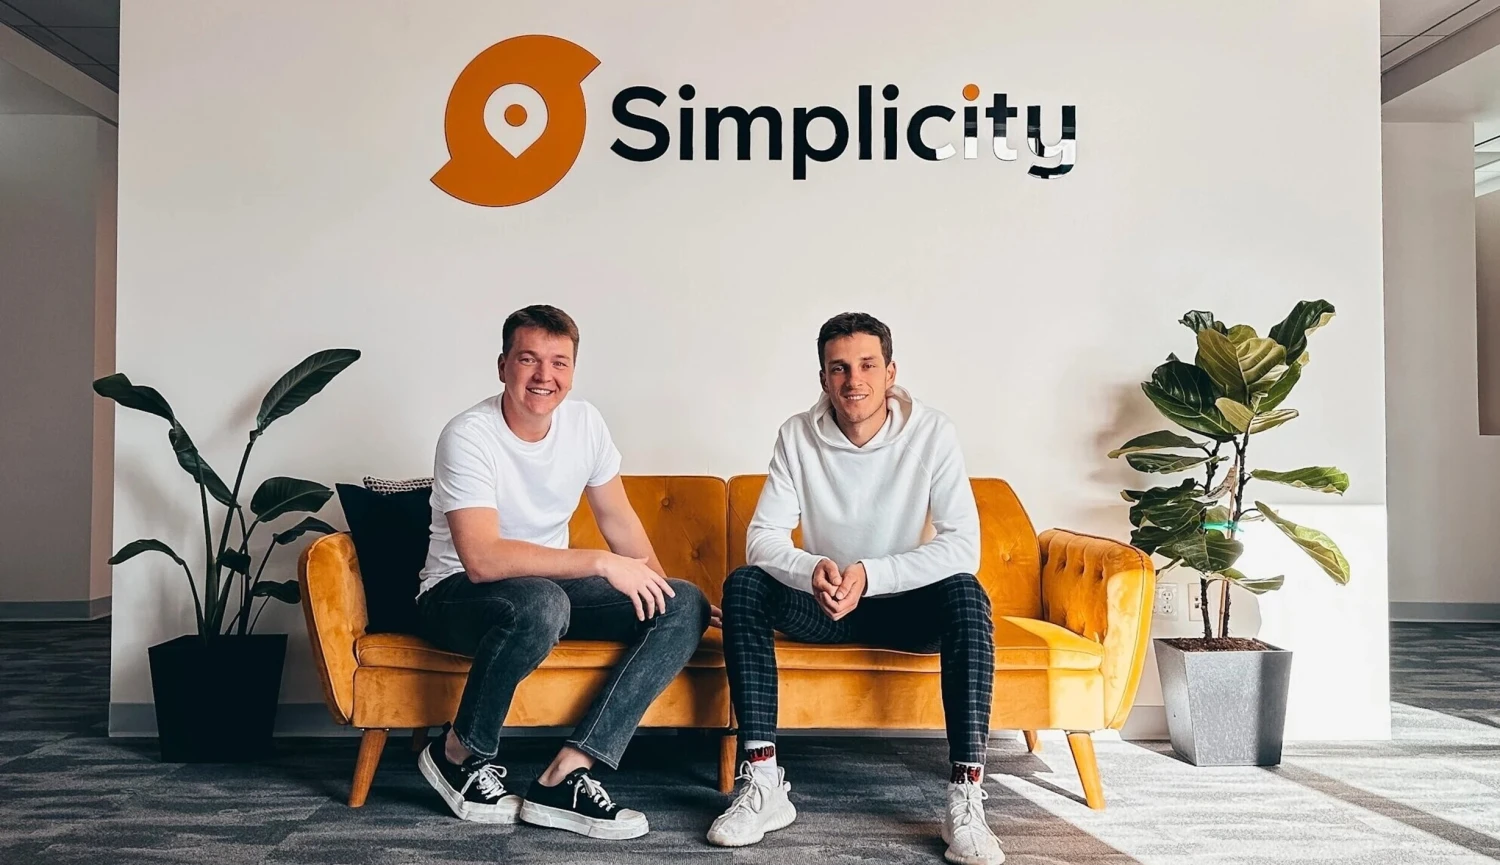 Slovenský startup s hvězdným investorem. Simplicity chystá vstup do Česka